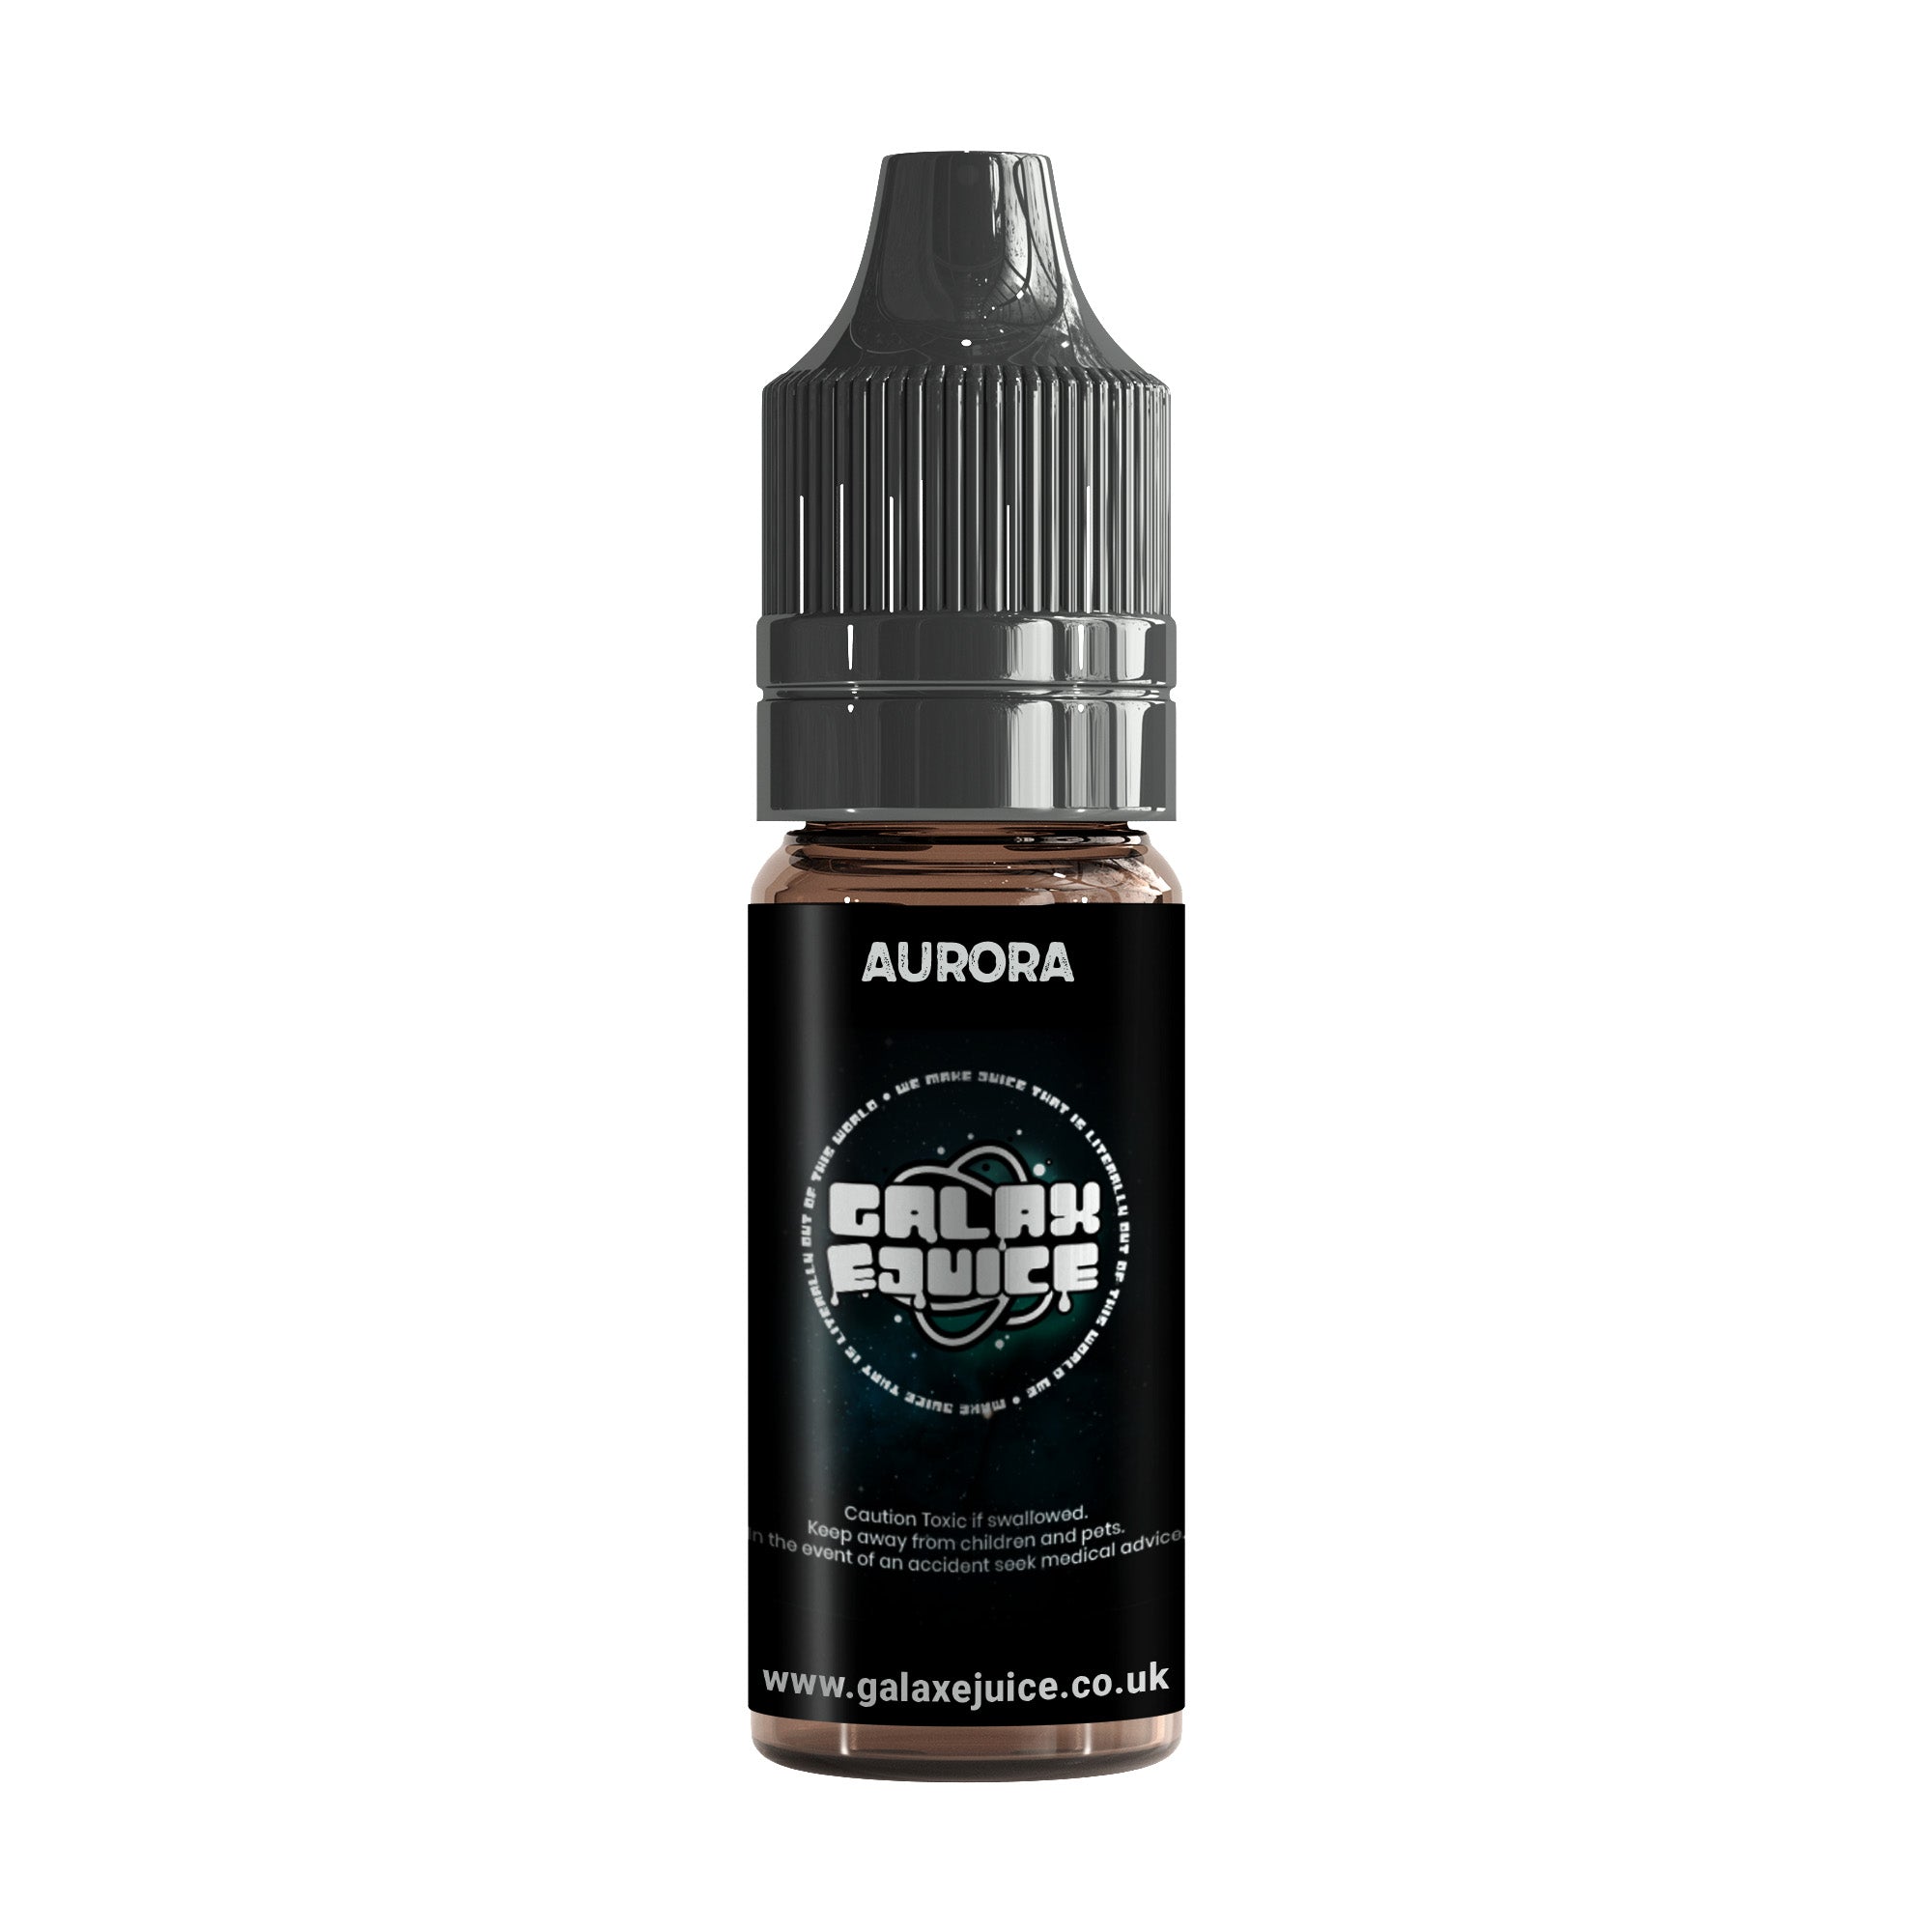 aurora flavour - 10ml bottle